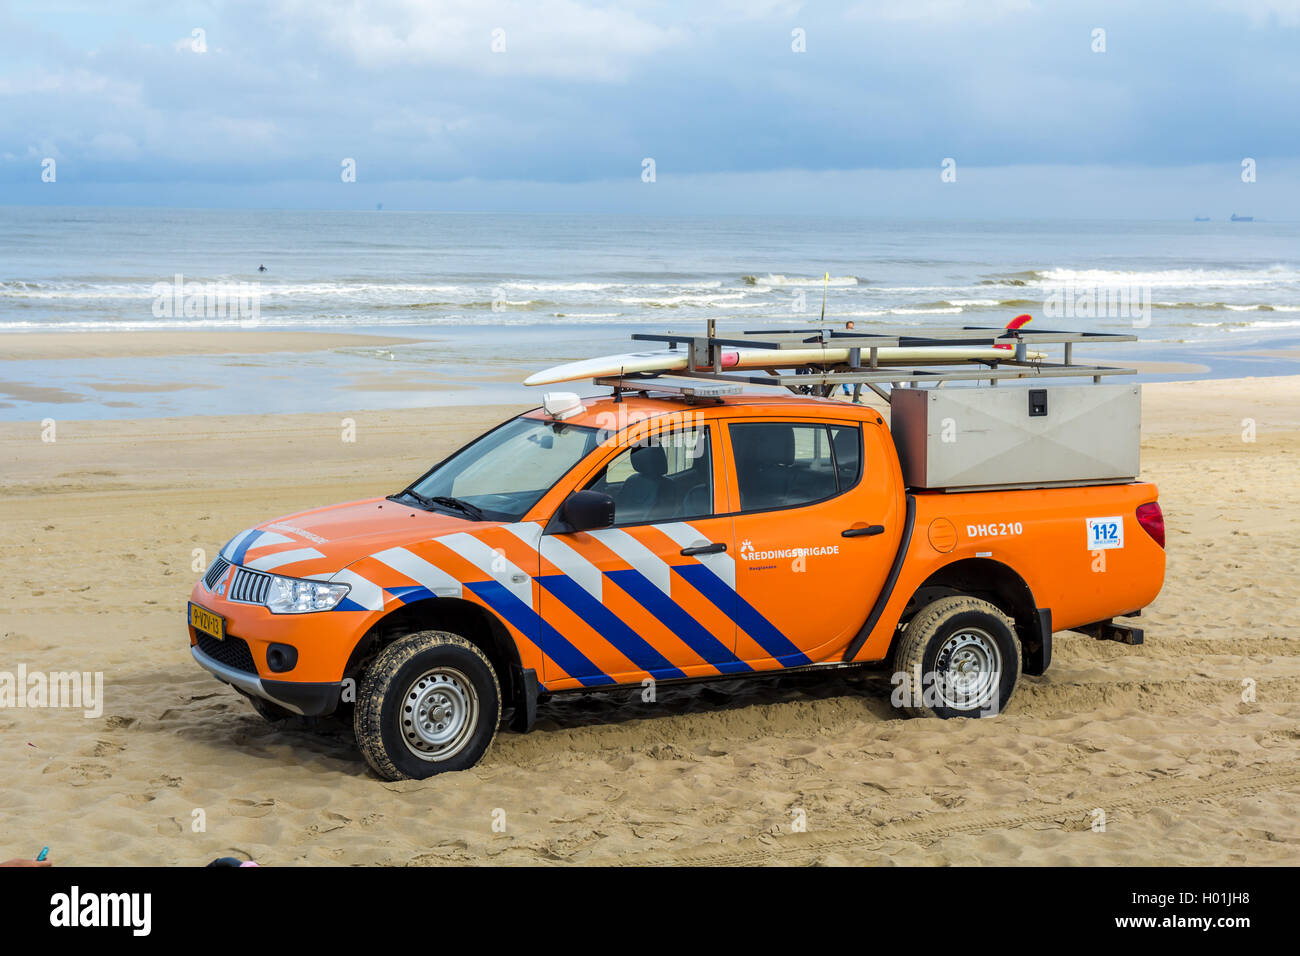 Kijkduin beach, les Pays-Bas - 17 septembre 2016 : surf life saving véhicule sur la plage Banque D'Images